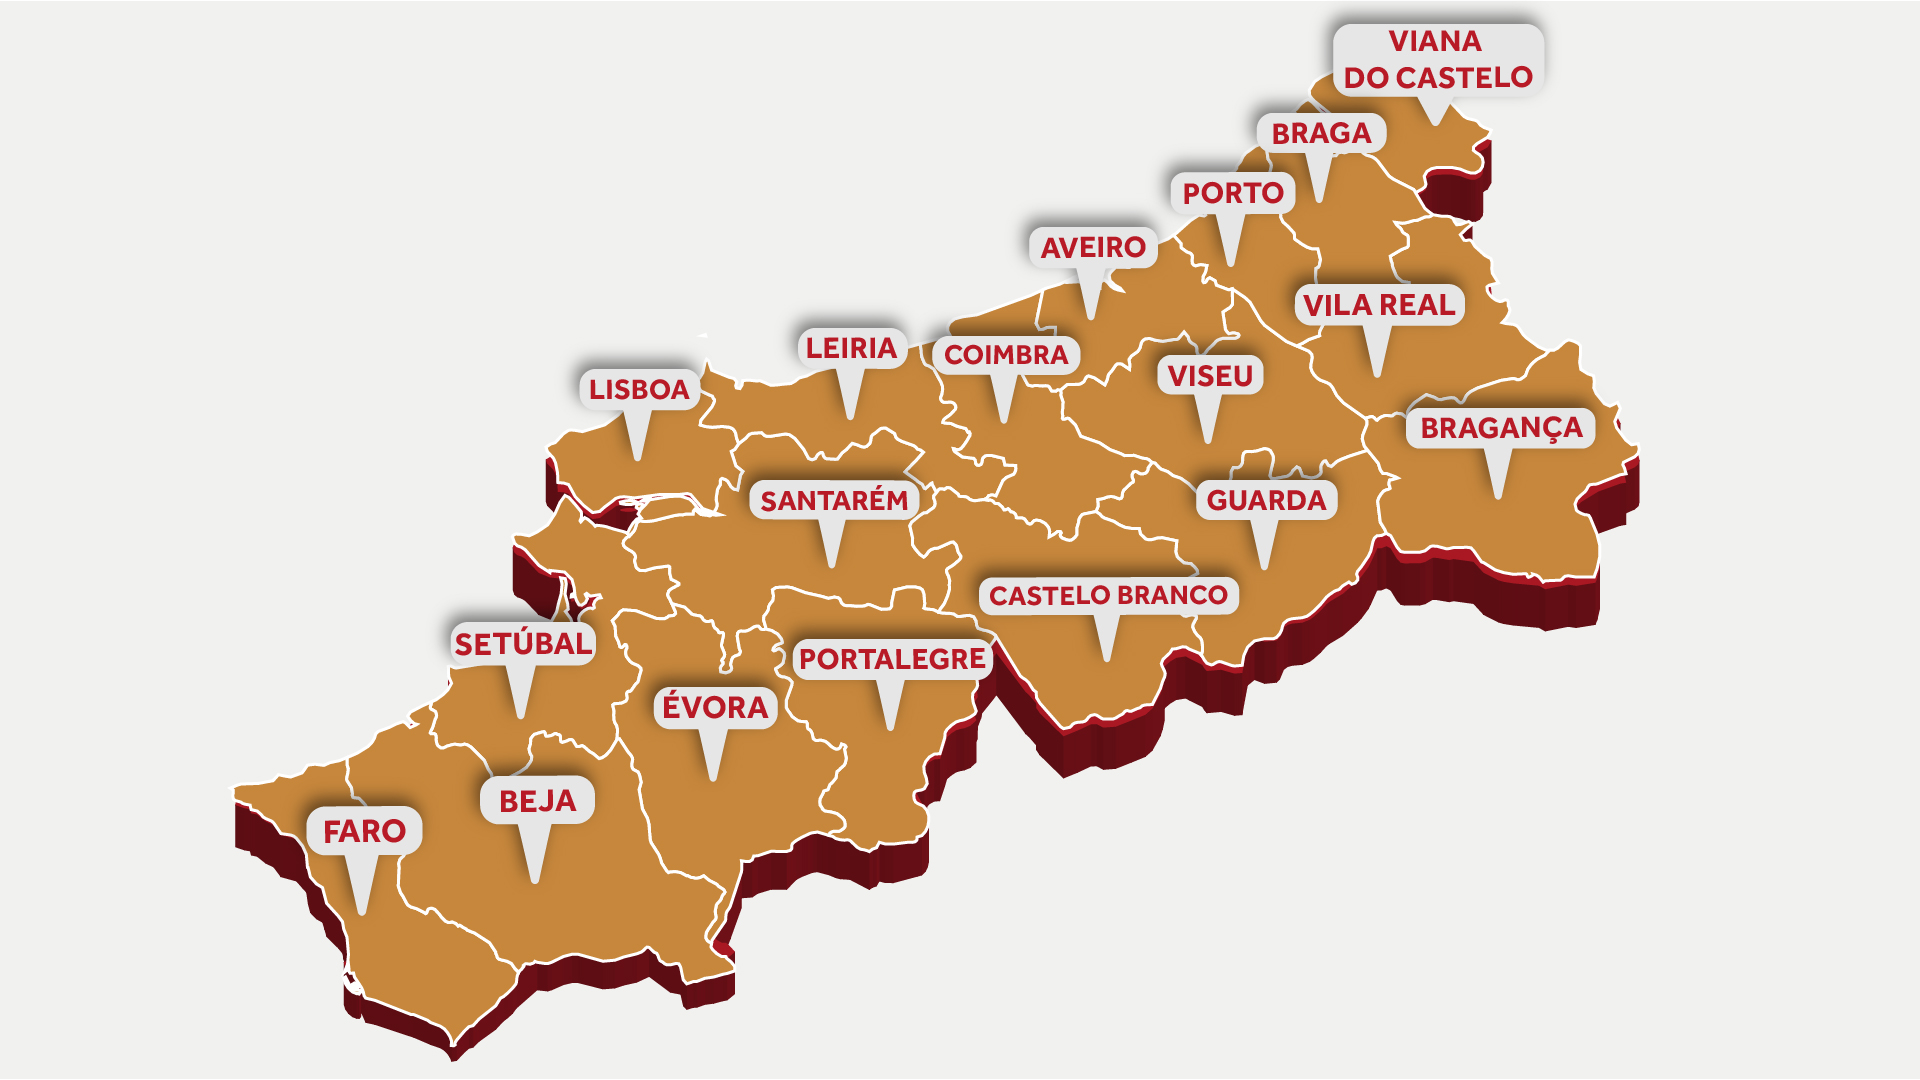 Mapa de Portugal segundo os distritos divididos nos quartis dos